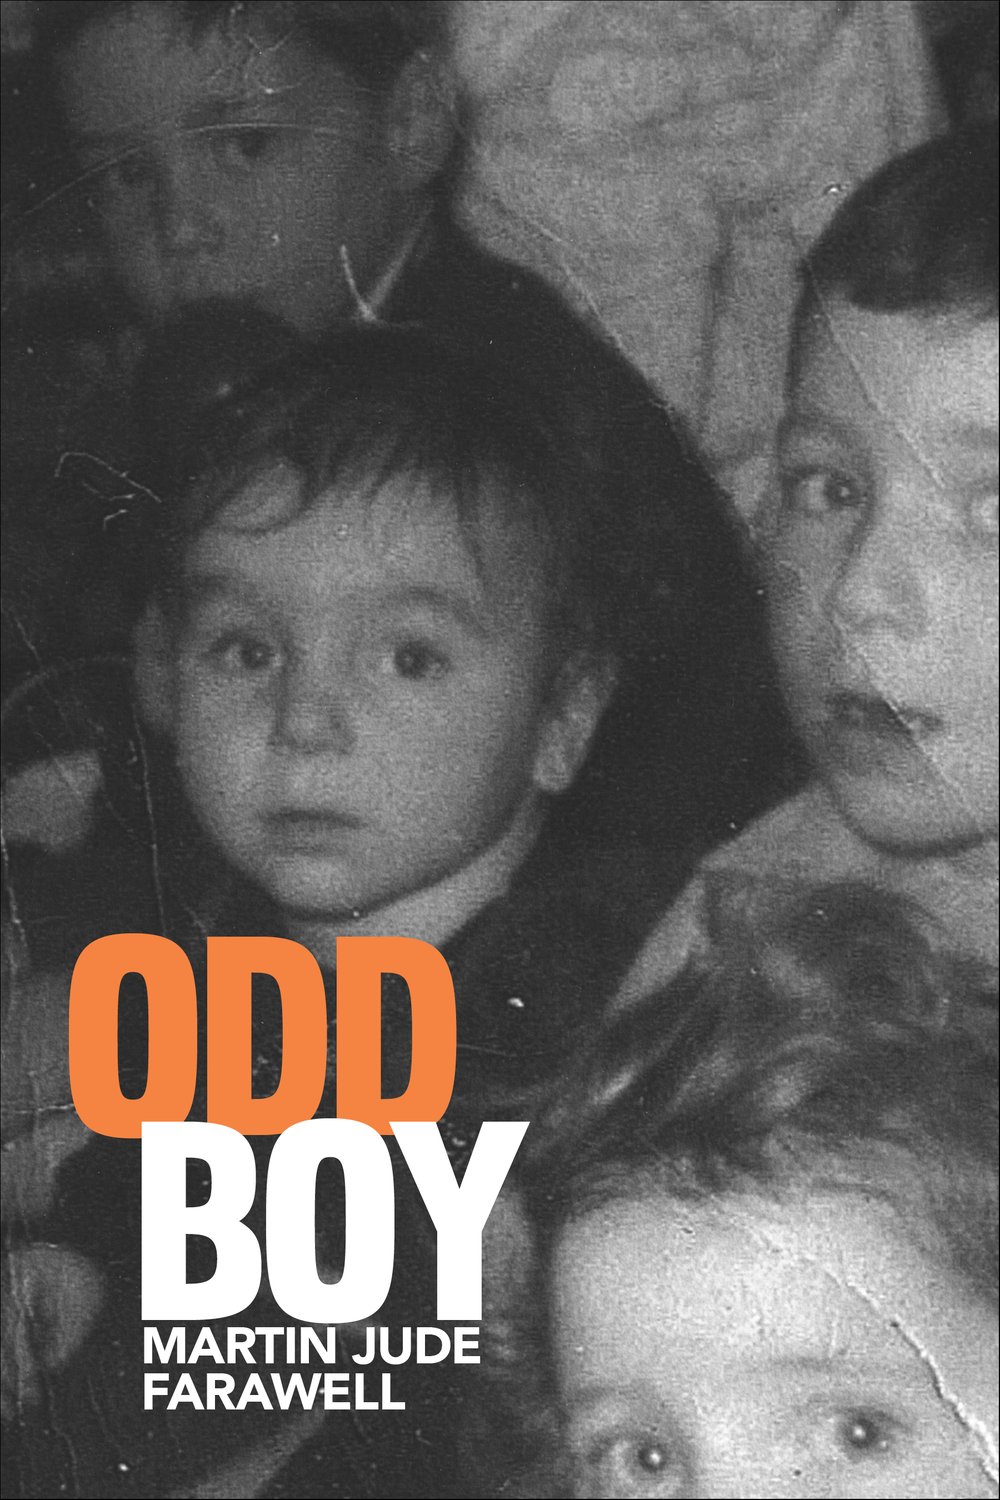 Odd Boy by Martin Jude Farawell